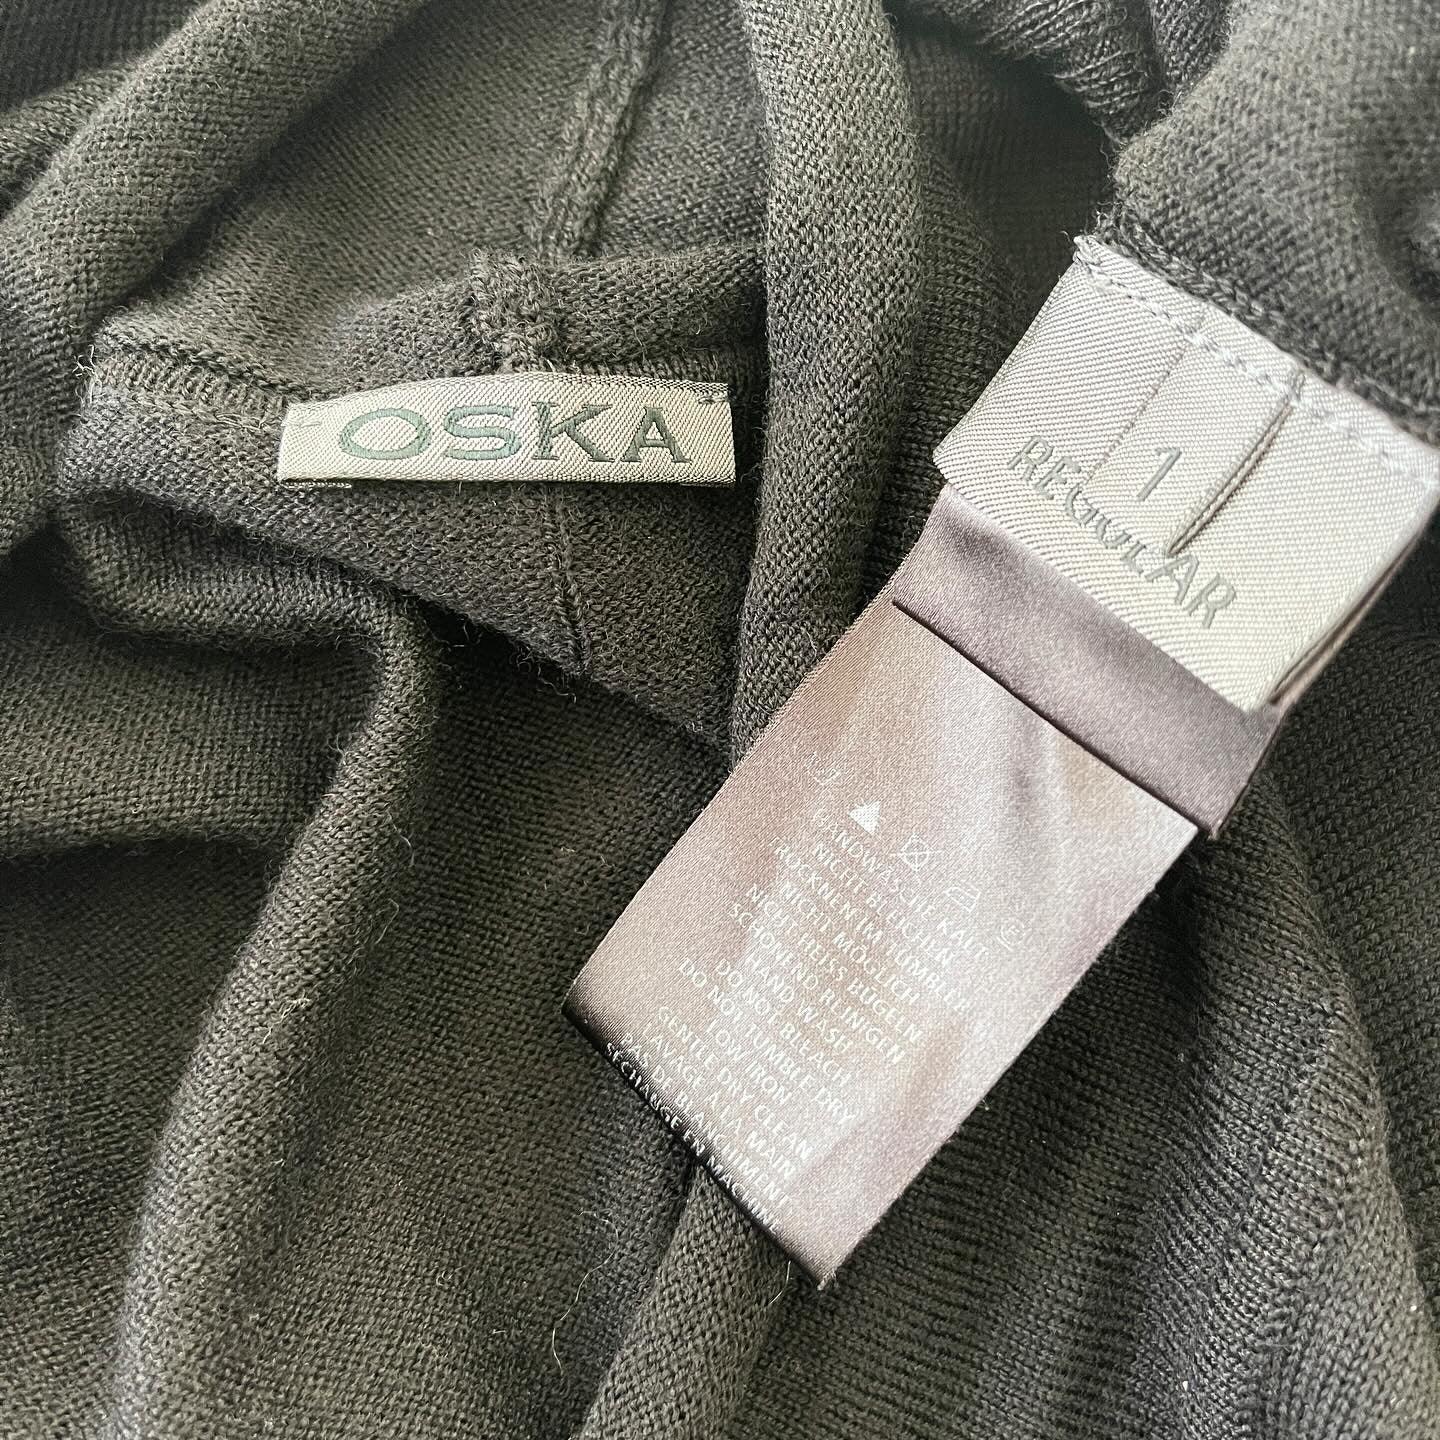 OSKA - OSKA Sweater - AVVIIVVA.COM